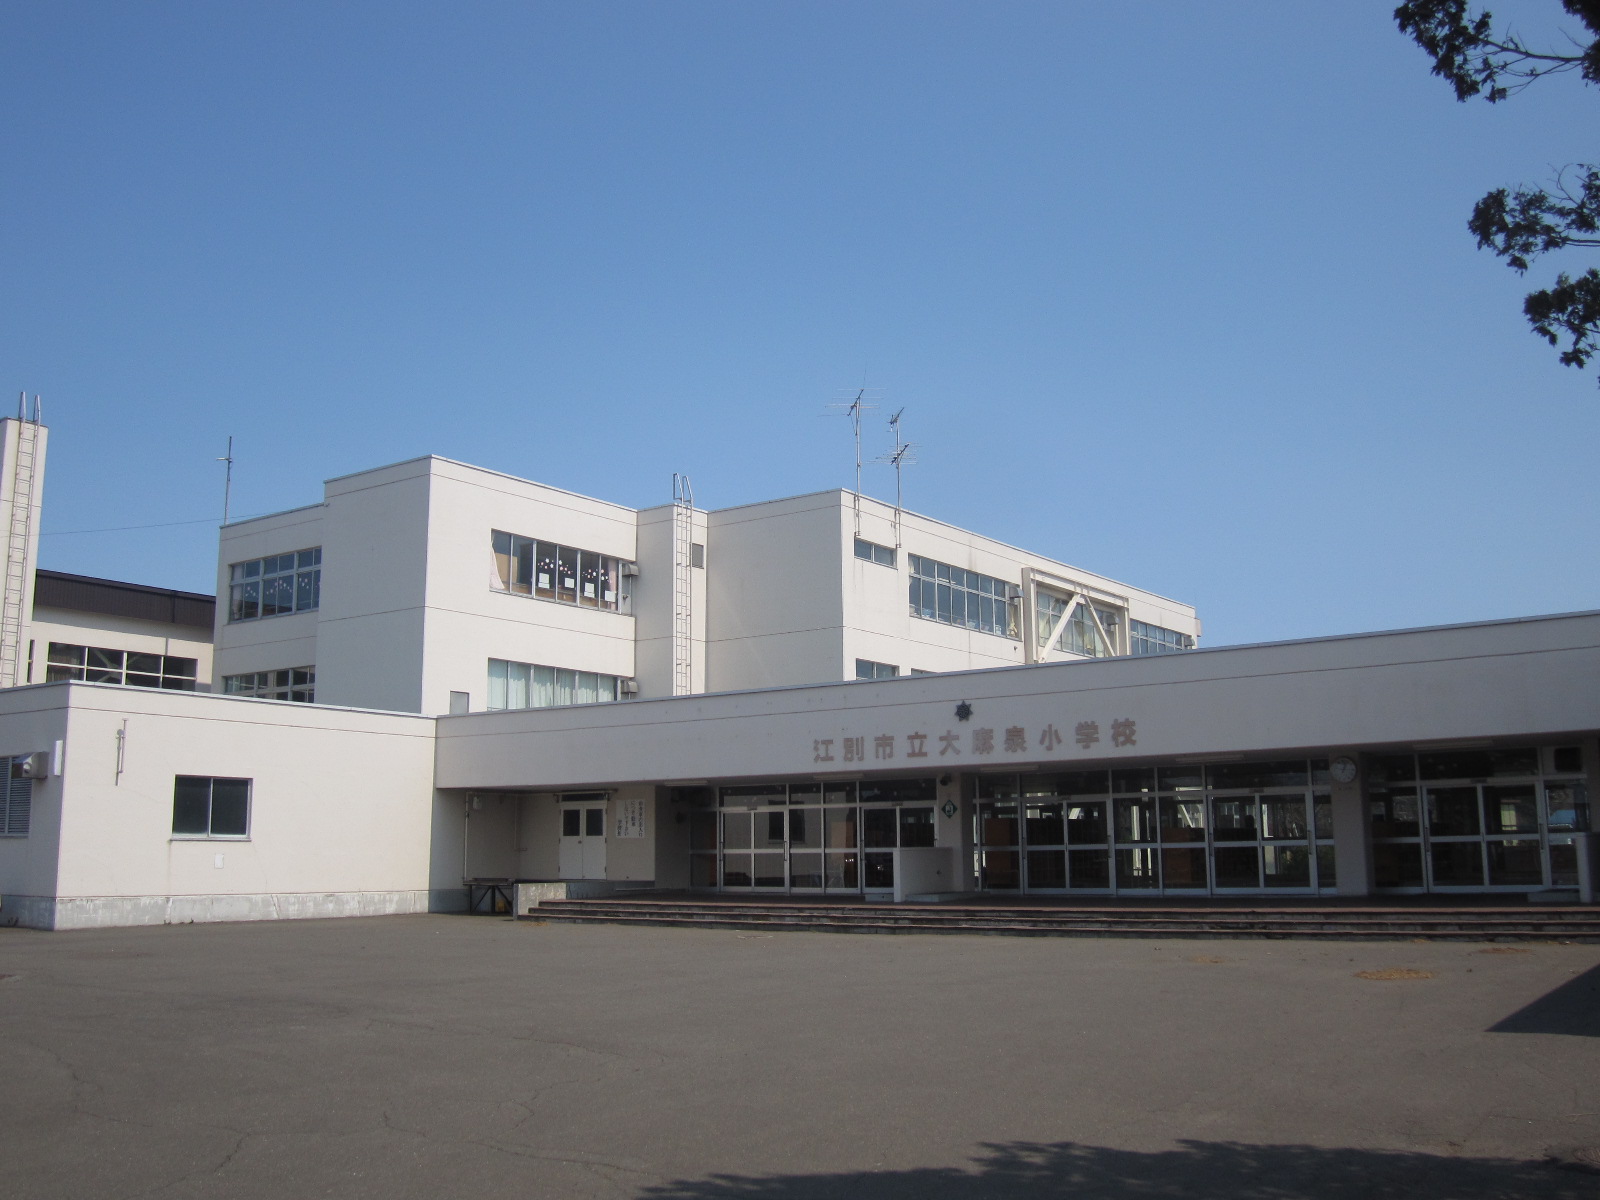 Primary school. 590m to Ebetsu Municipal Oasaizumi elementary school (elementary school)